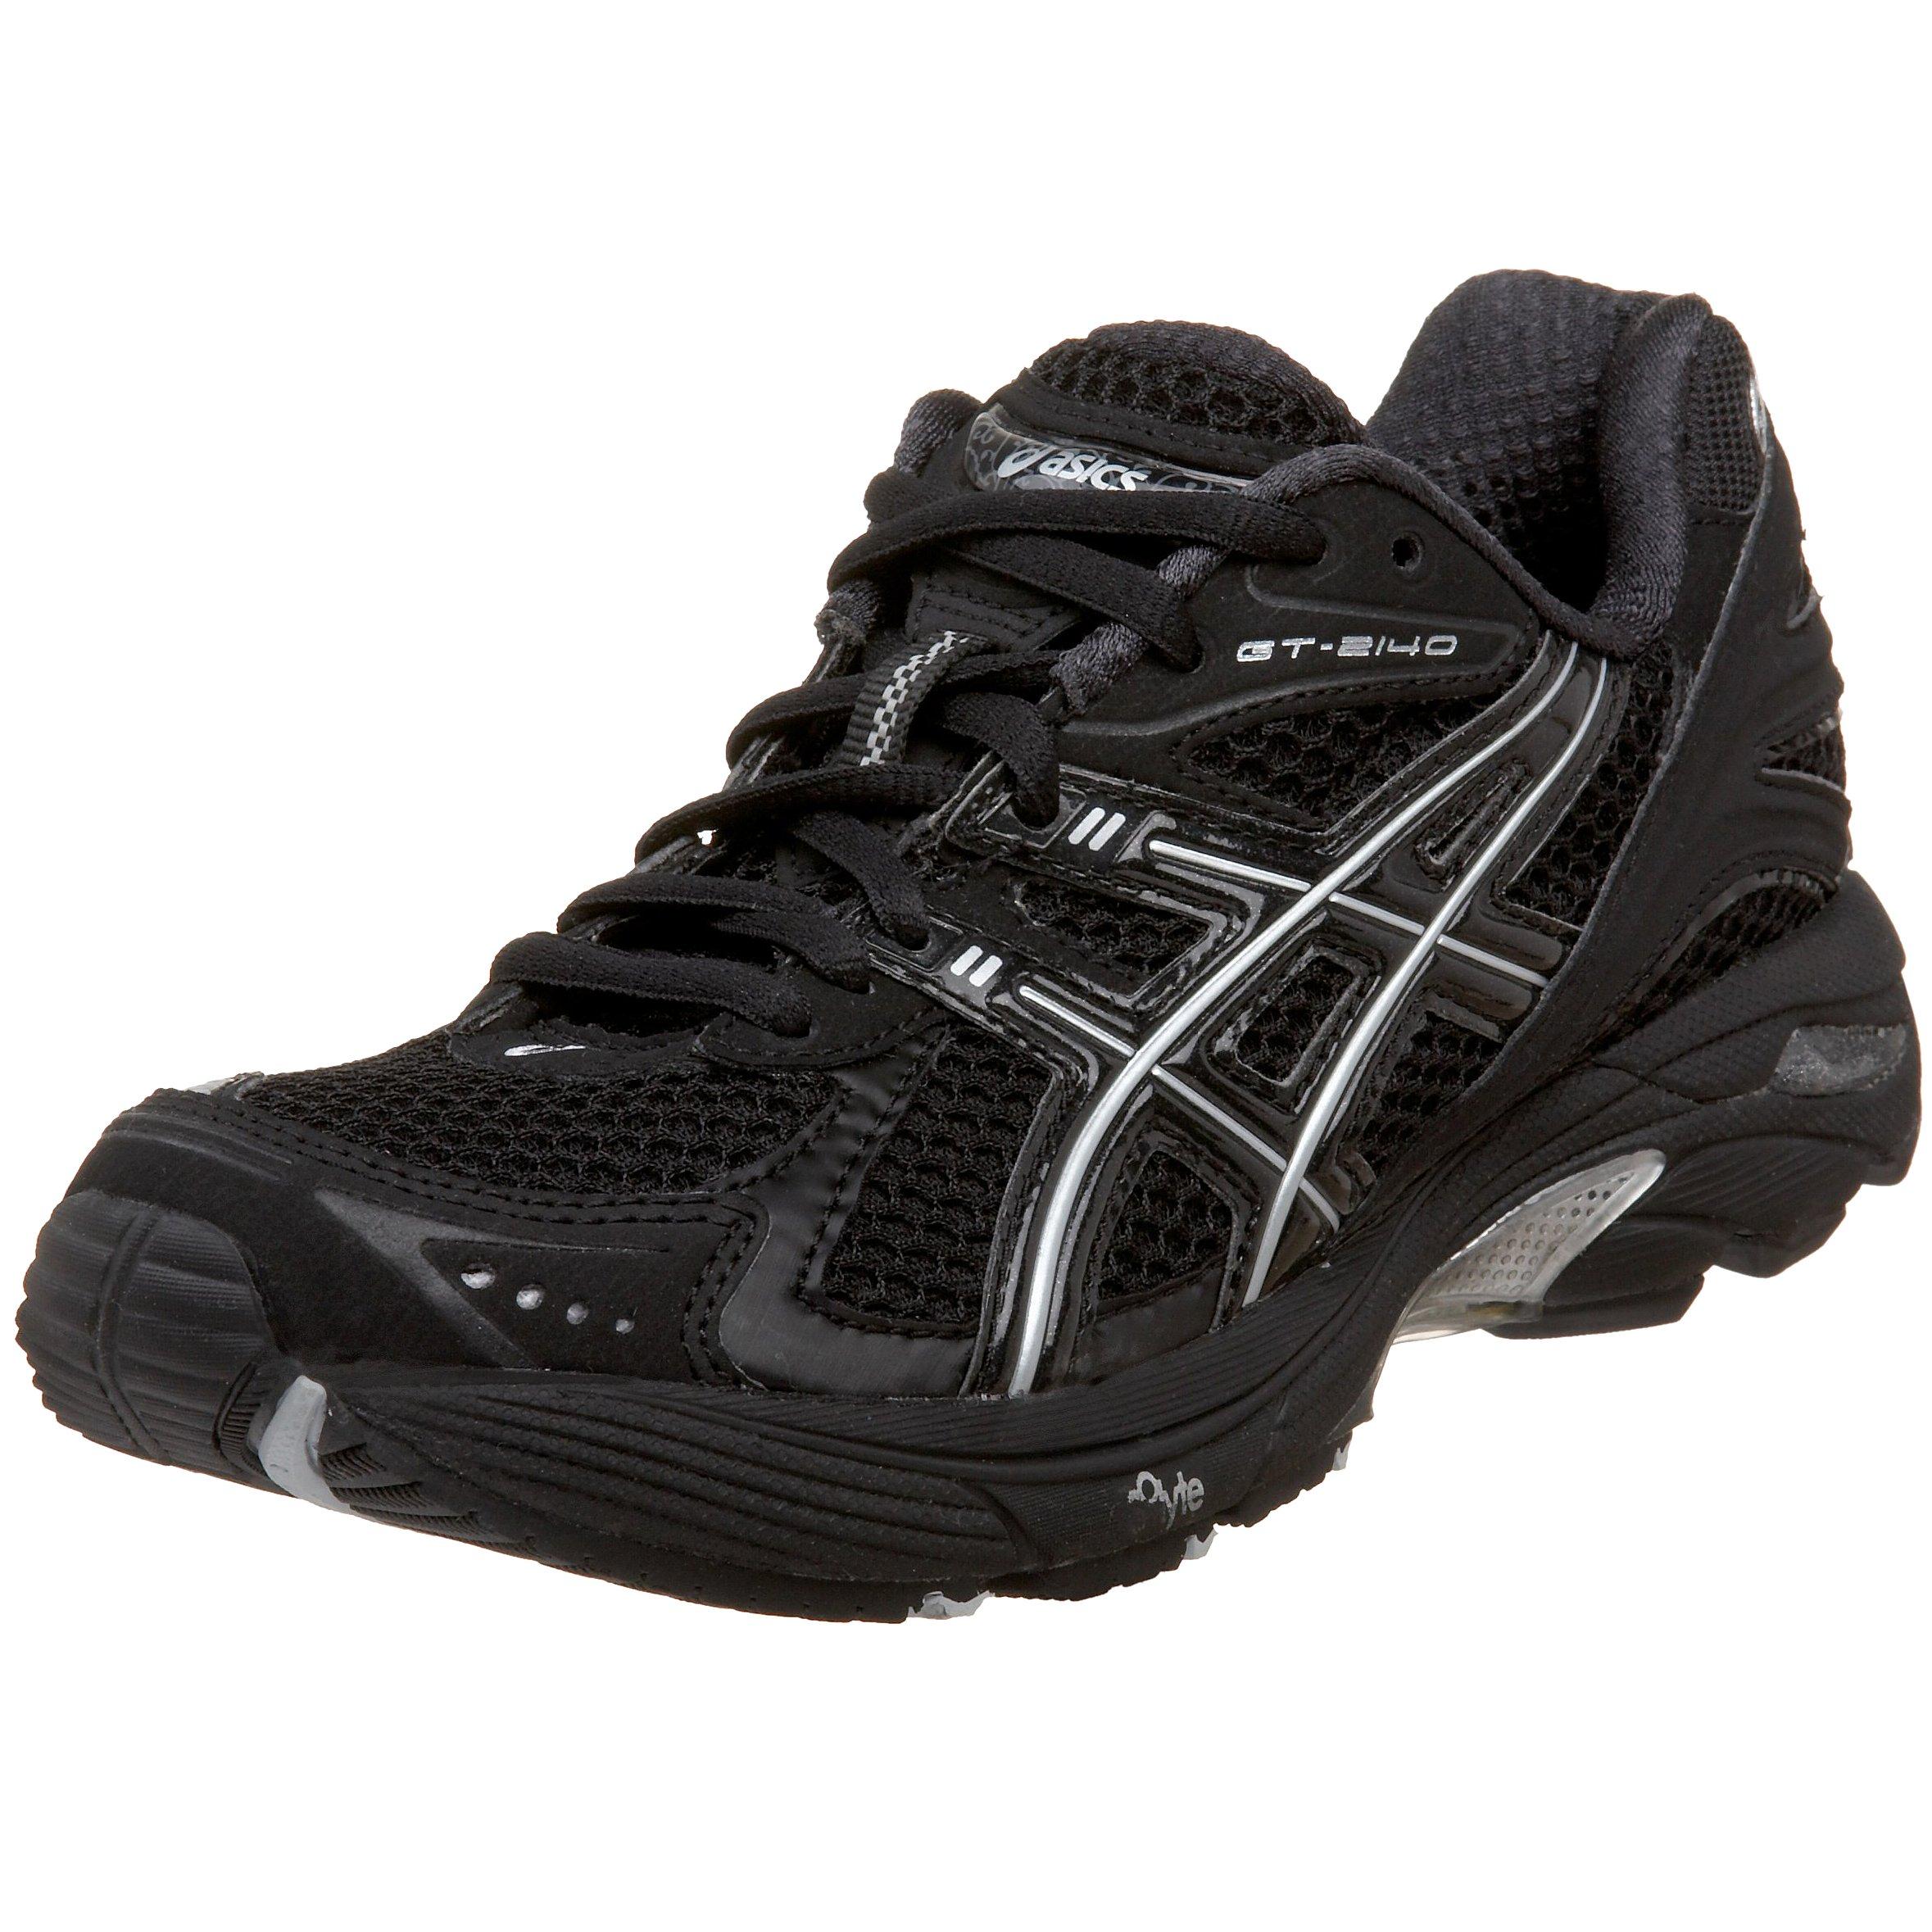 Asics Gt-2140 Running Shoe,onyx/black/lightning,12 D Us | Lyst UK